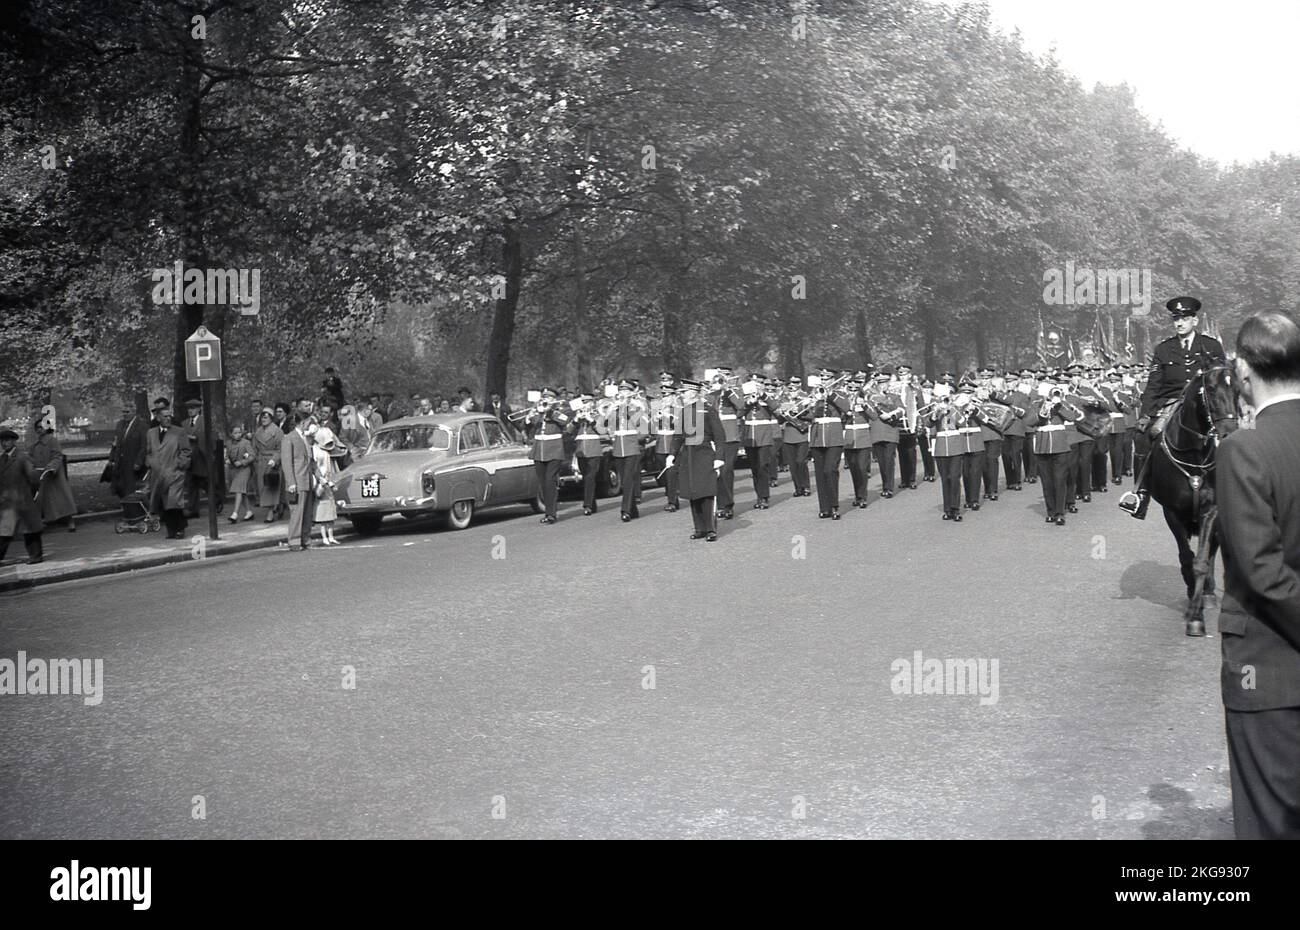 1950s, storico, un poliziotto a cavallo di fronte a una band che gioca mentre camminano lungo una strada, forse l'Esercito della salvezza, che conduce una marcia di ex-servicemen e membri sindacali, Parliament Hill, Westminster, Londra, Inghilterra, REGNO UNITO. Foto Stock